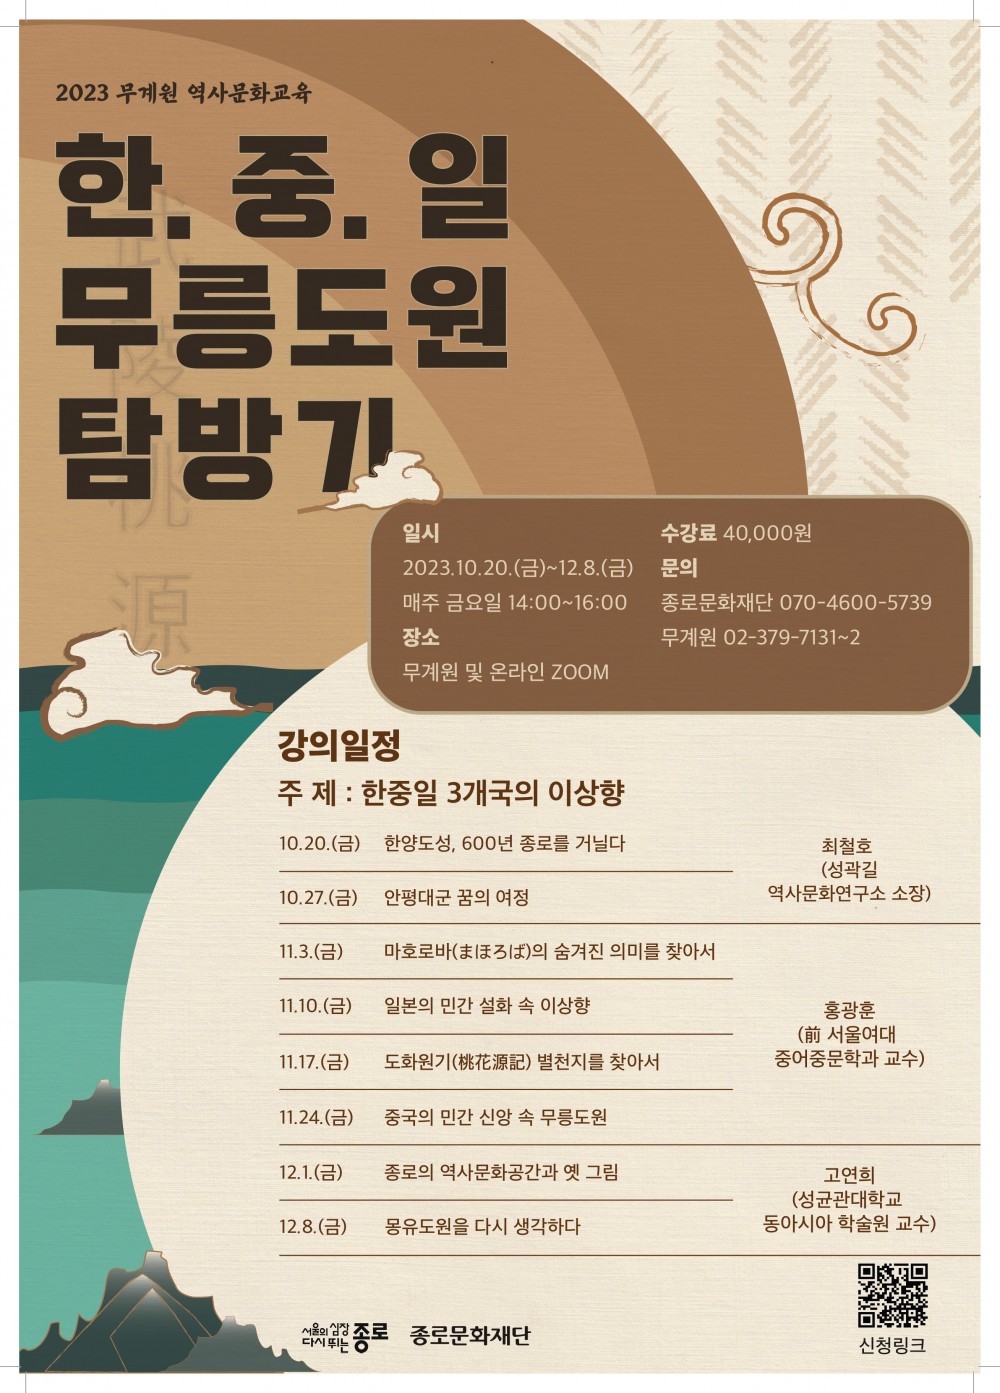 [붙임] 2023 무계원 역사문화교육 포스터_최종_-jpg